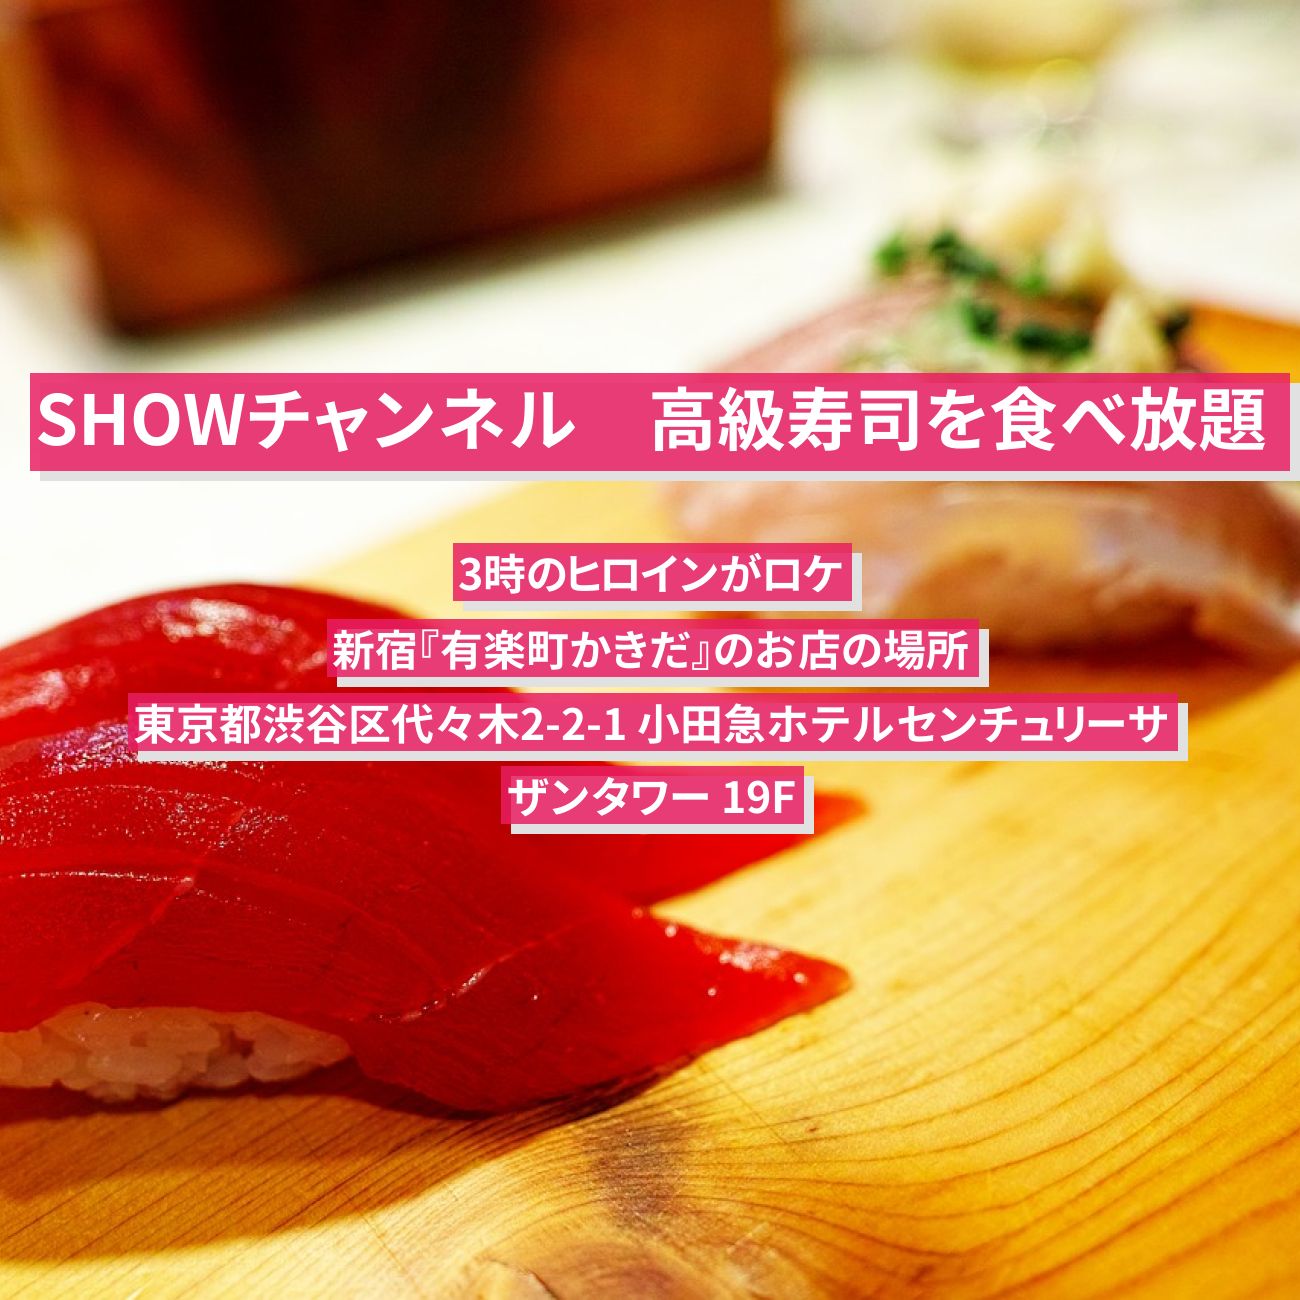 【SHOWチャンネル】高級寿司の食べ放題　新宿『有楽町かきだ』のお店の場所〔3時のヒロイン〕